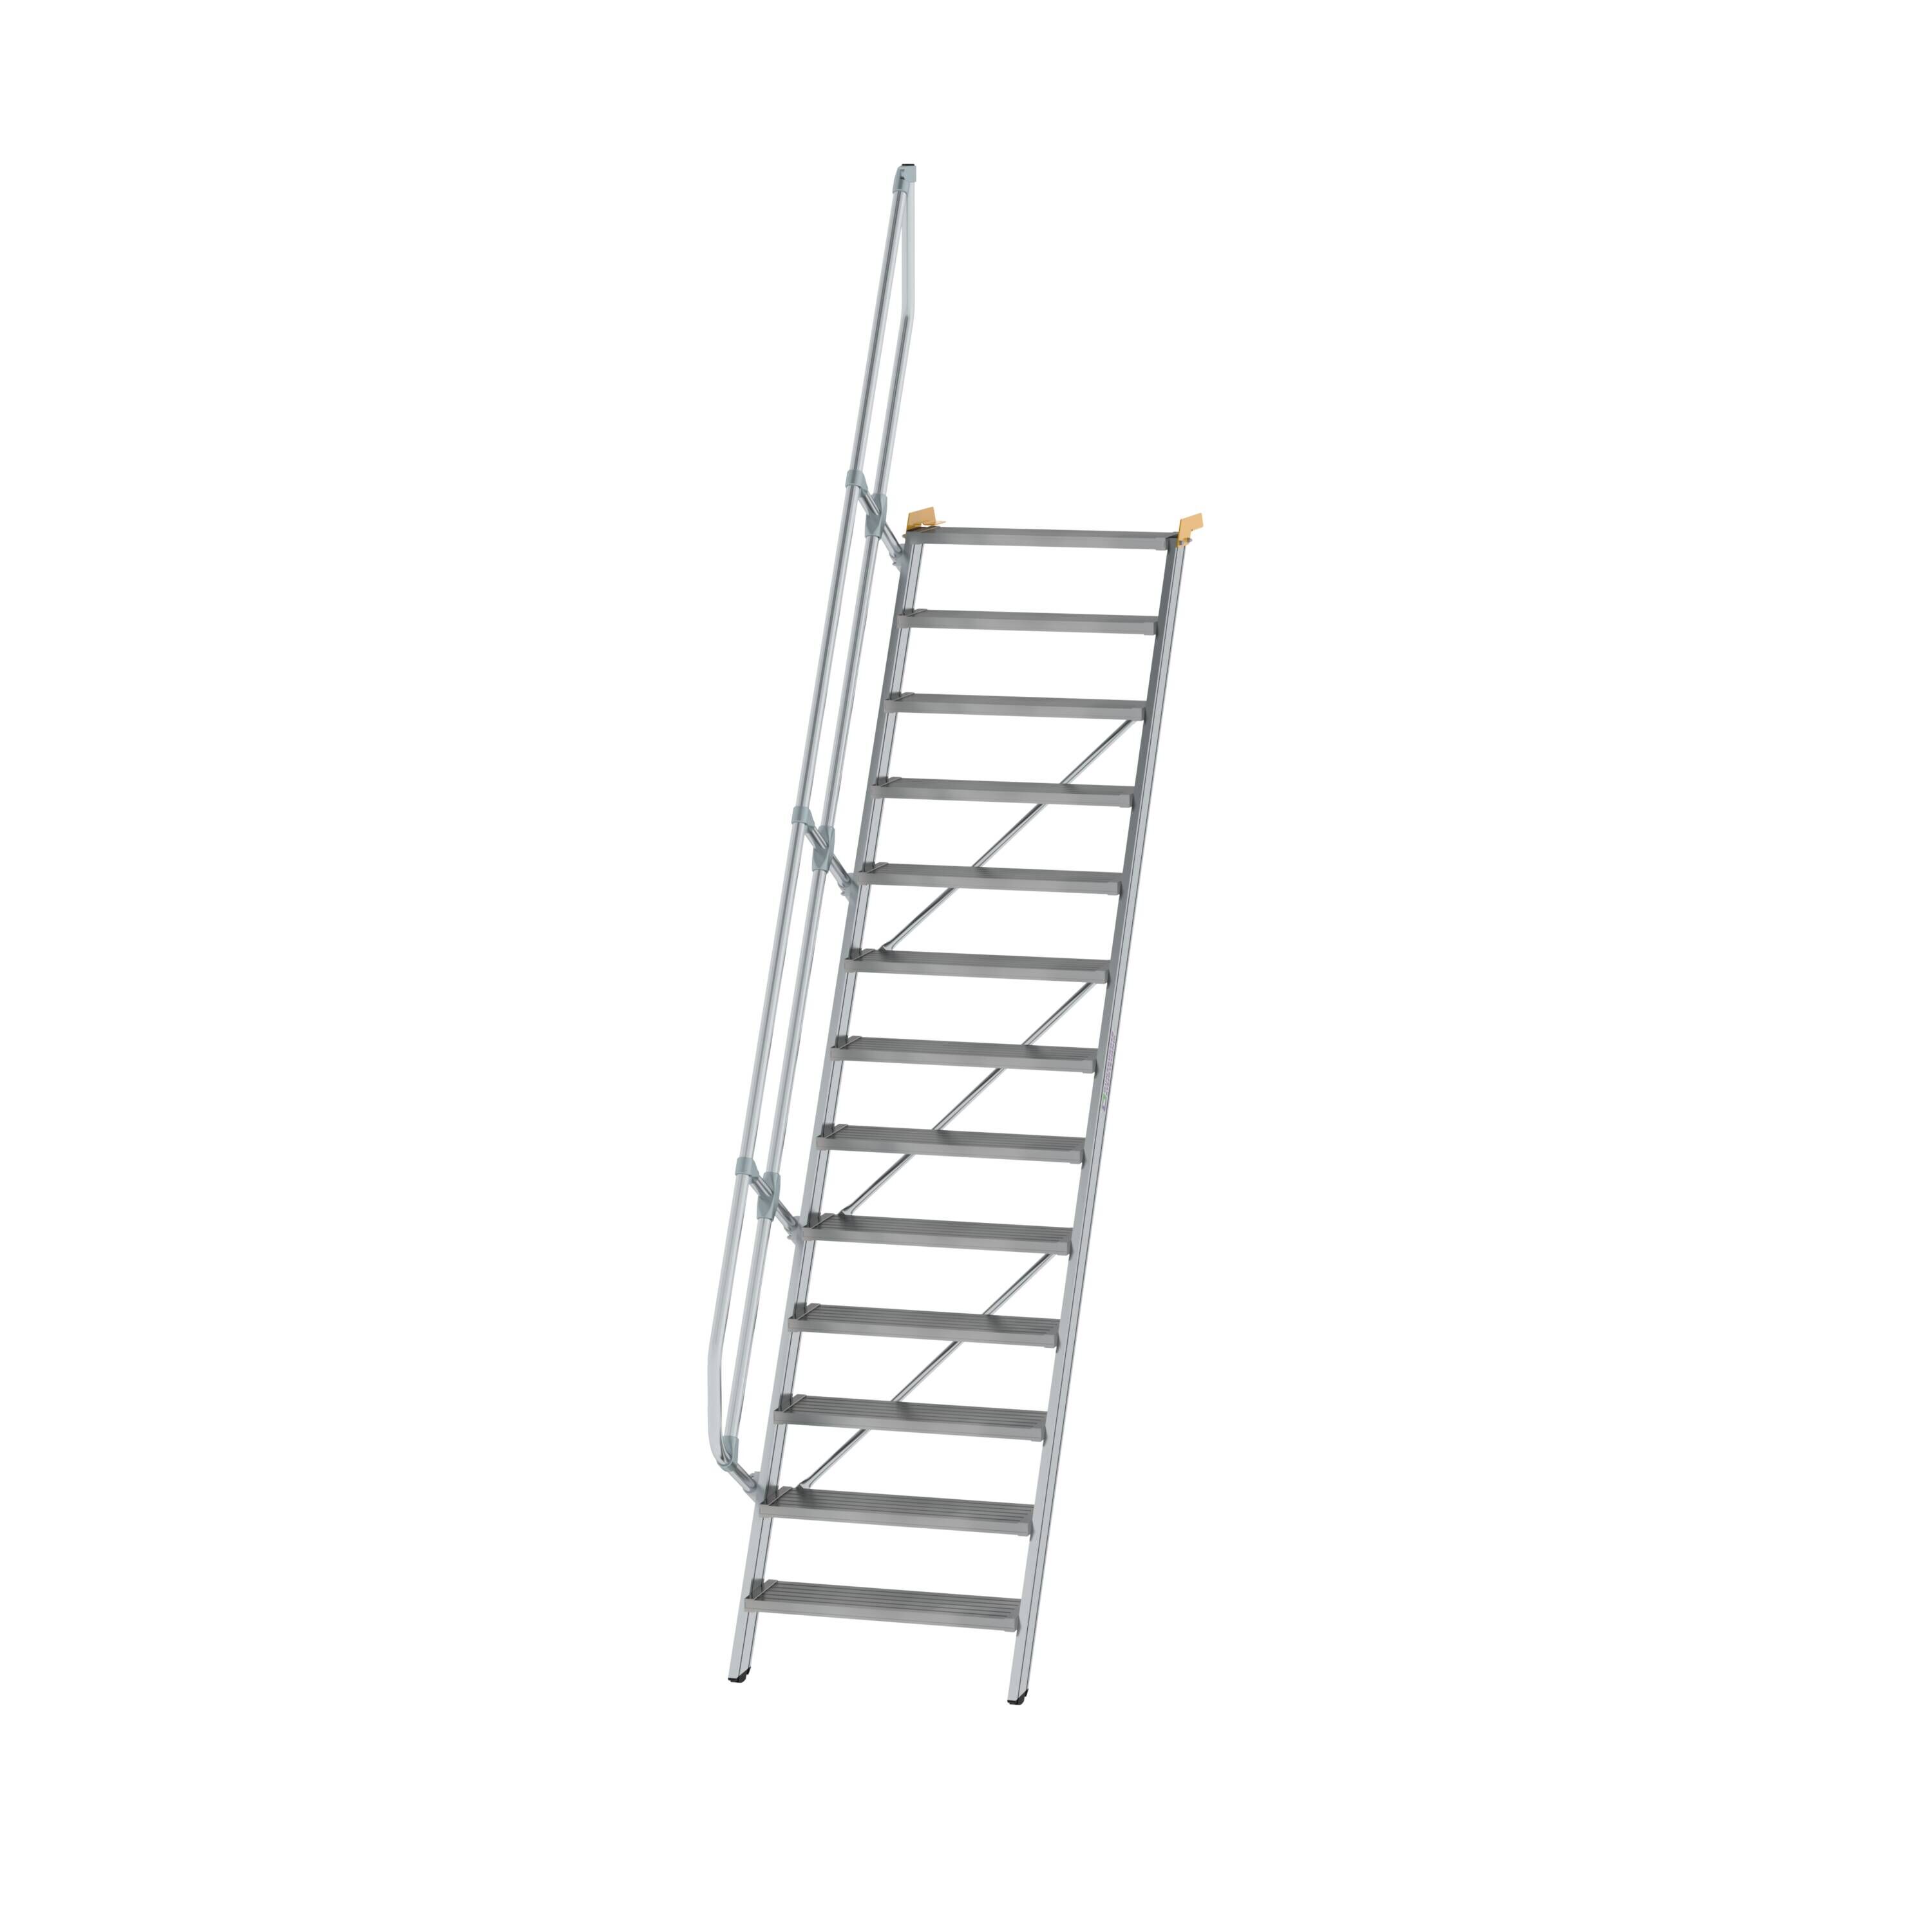 Treppe 60° Stufenbreite 800 mm 13 Stufen Aluminium geriffelt